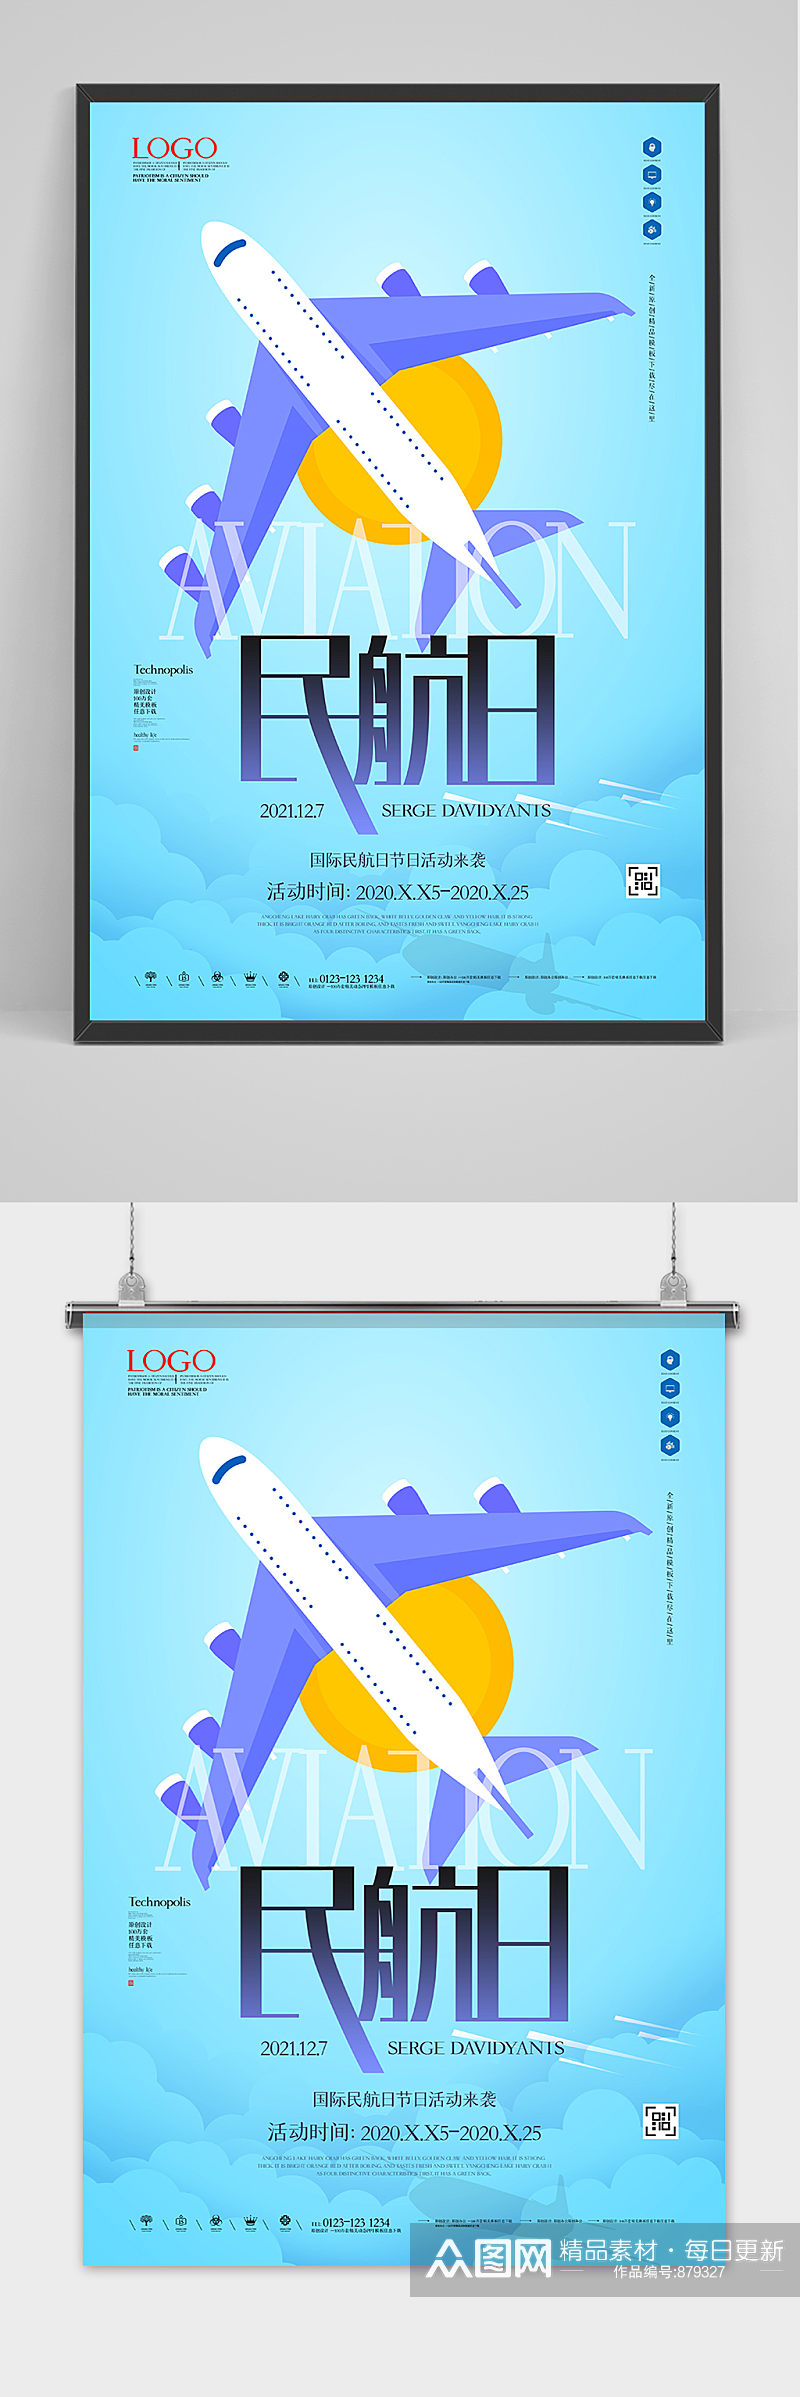 蓝色国际民航日创意宣传海报素材